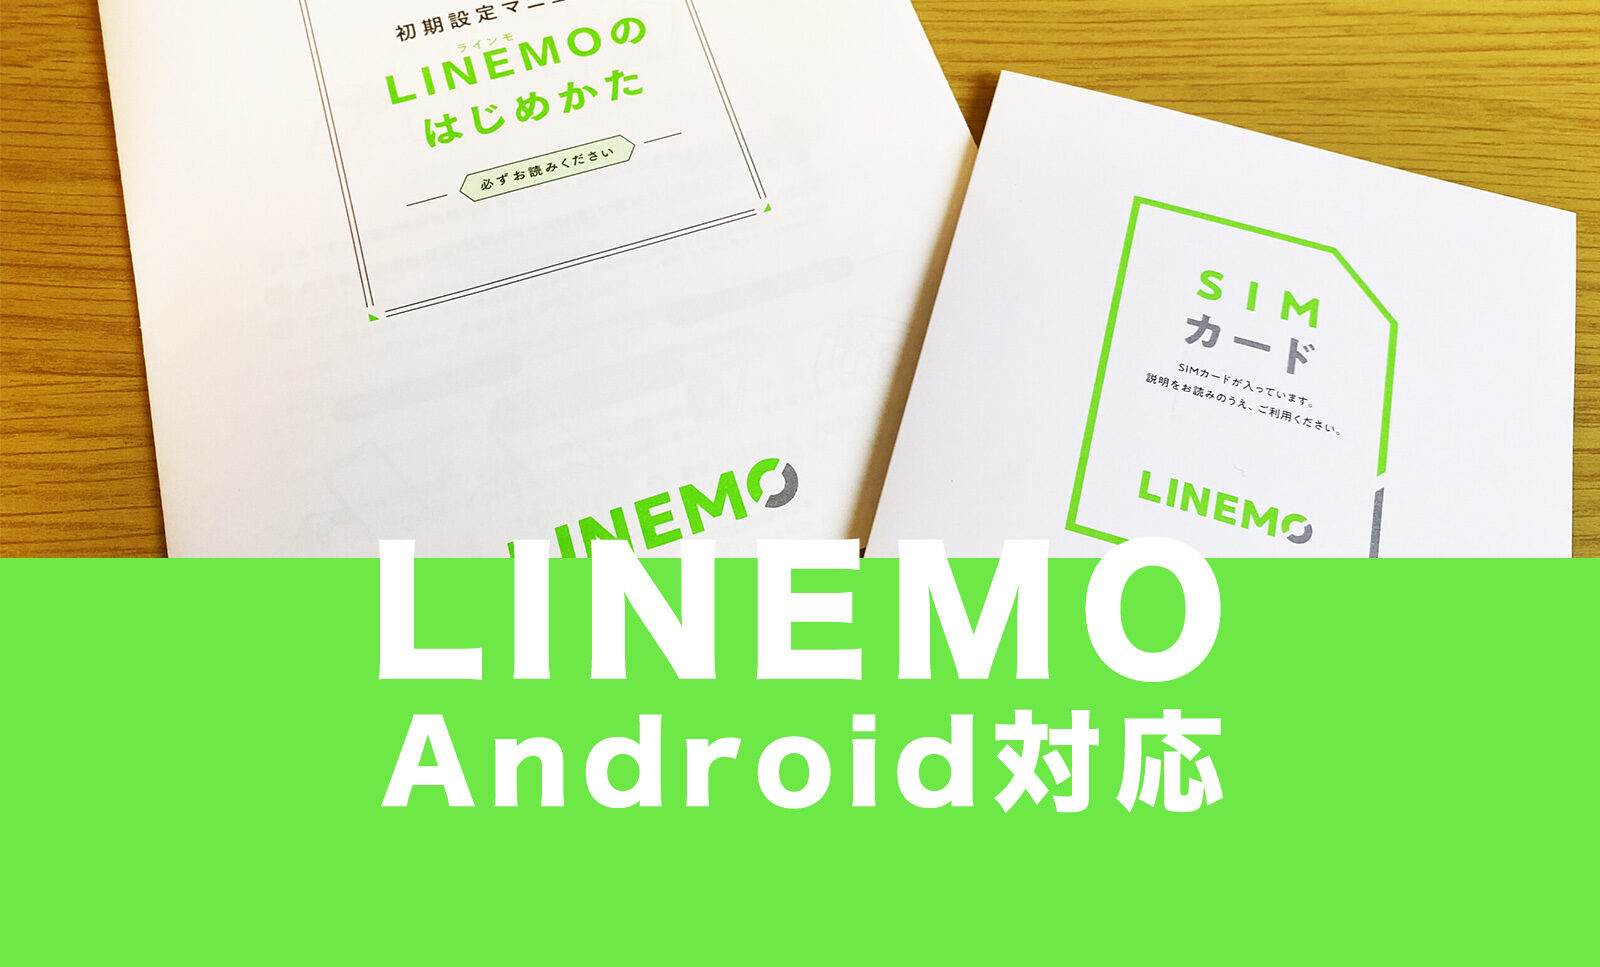 LINEMO(ラインモ)のアンドロイド(Android)の対応機種&端末は？のサムネイル画像